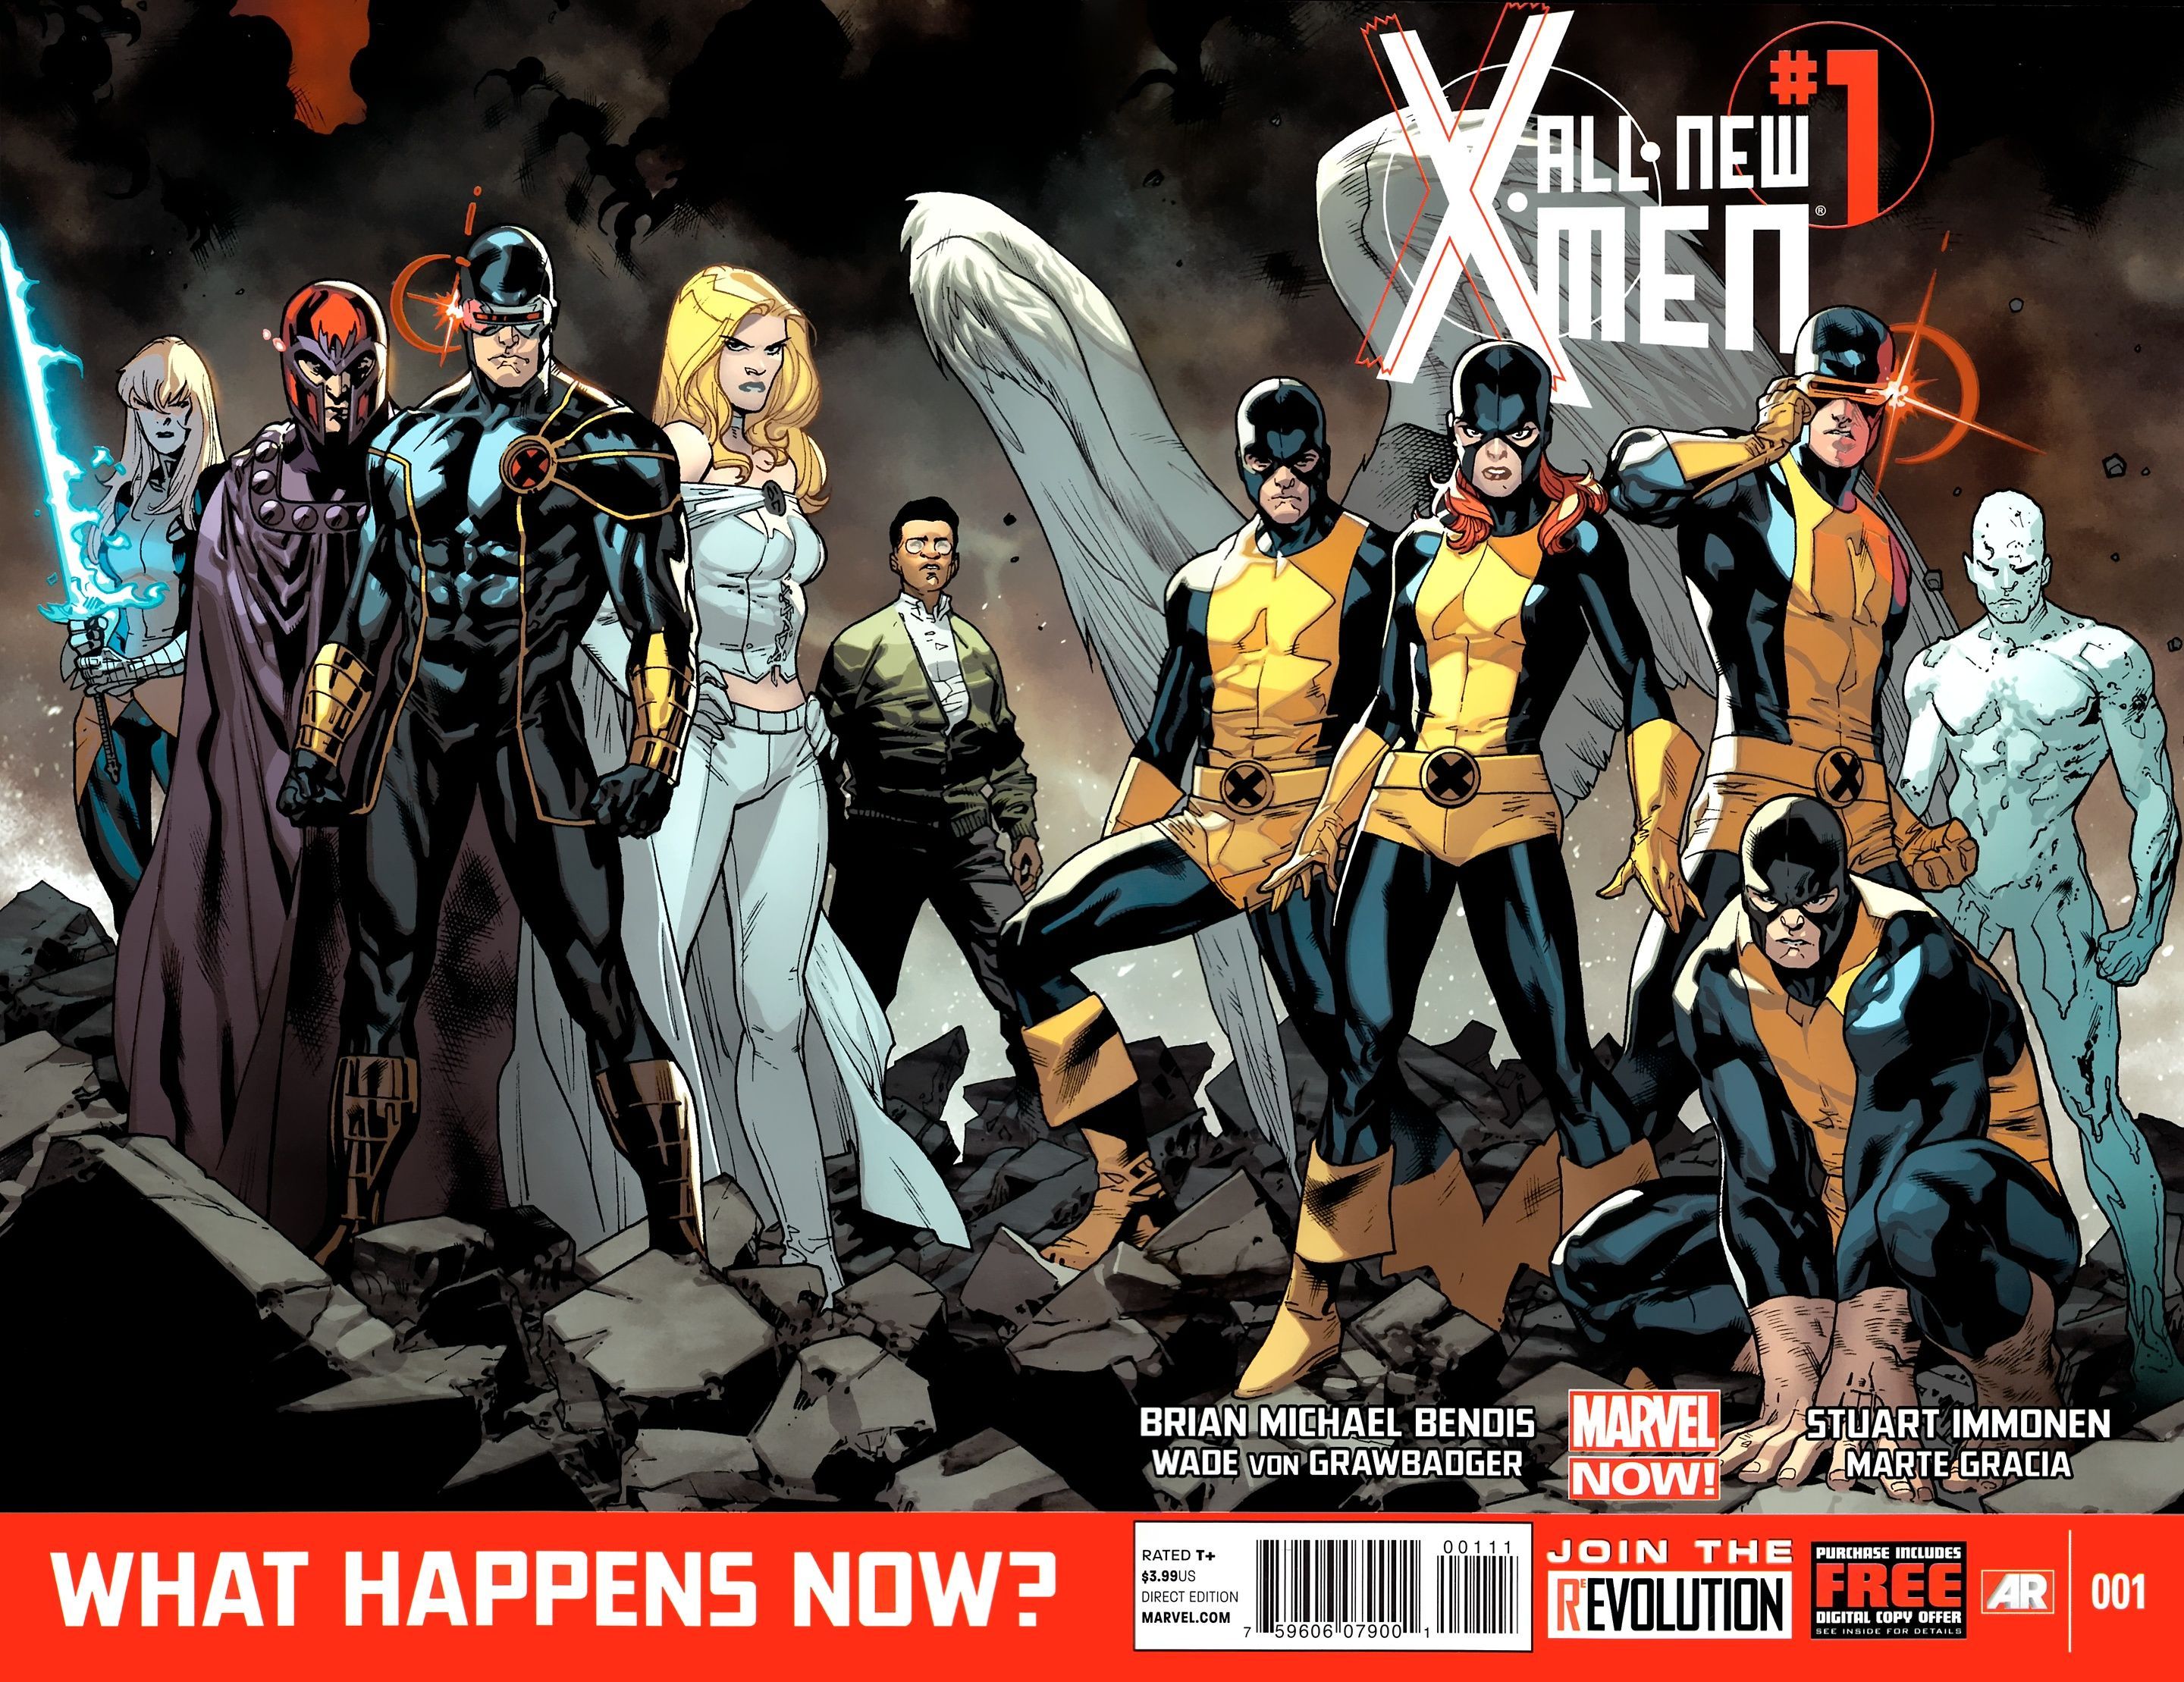 All-New X-Men Volume 1 #1 Full Cover Art (Marvel Comics)